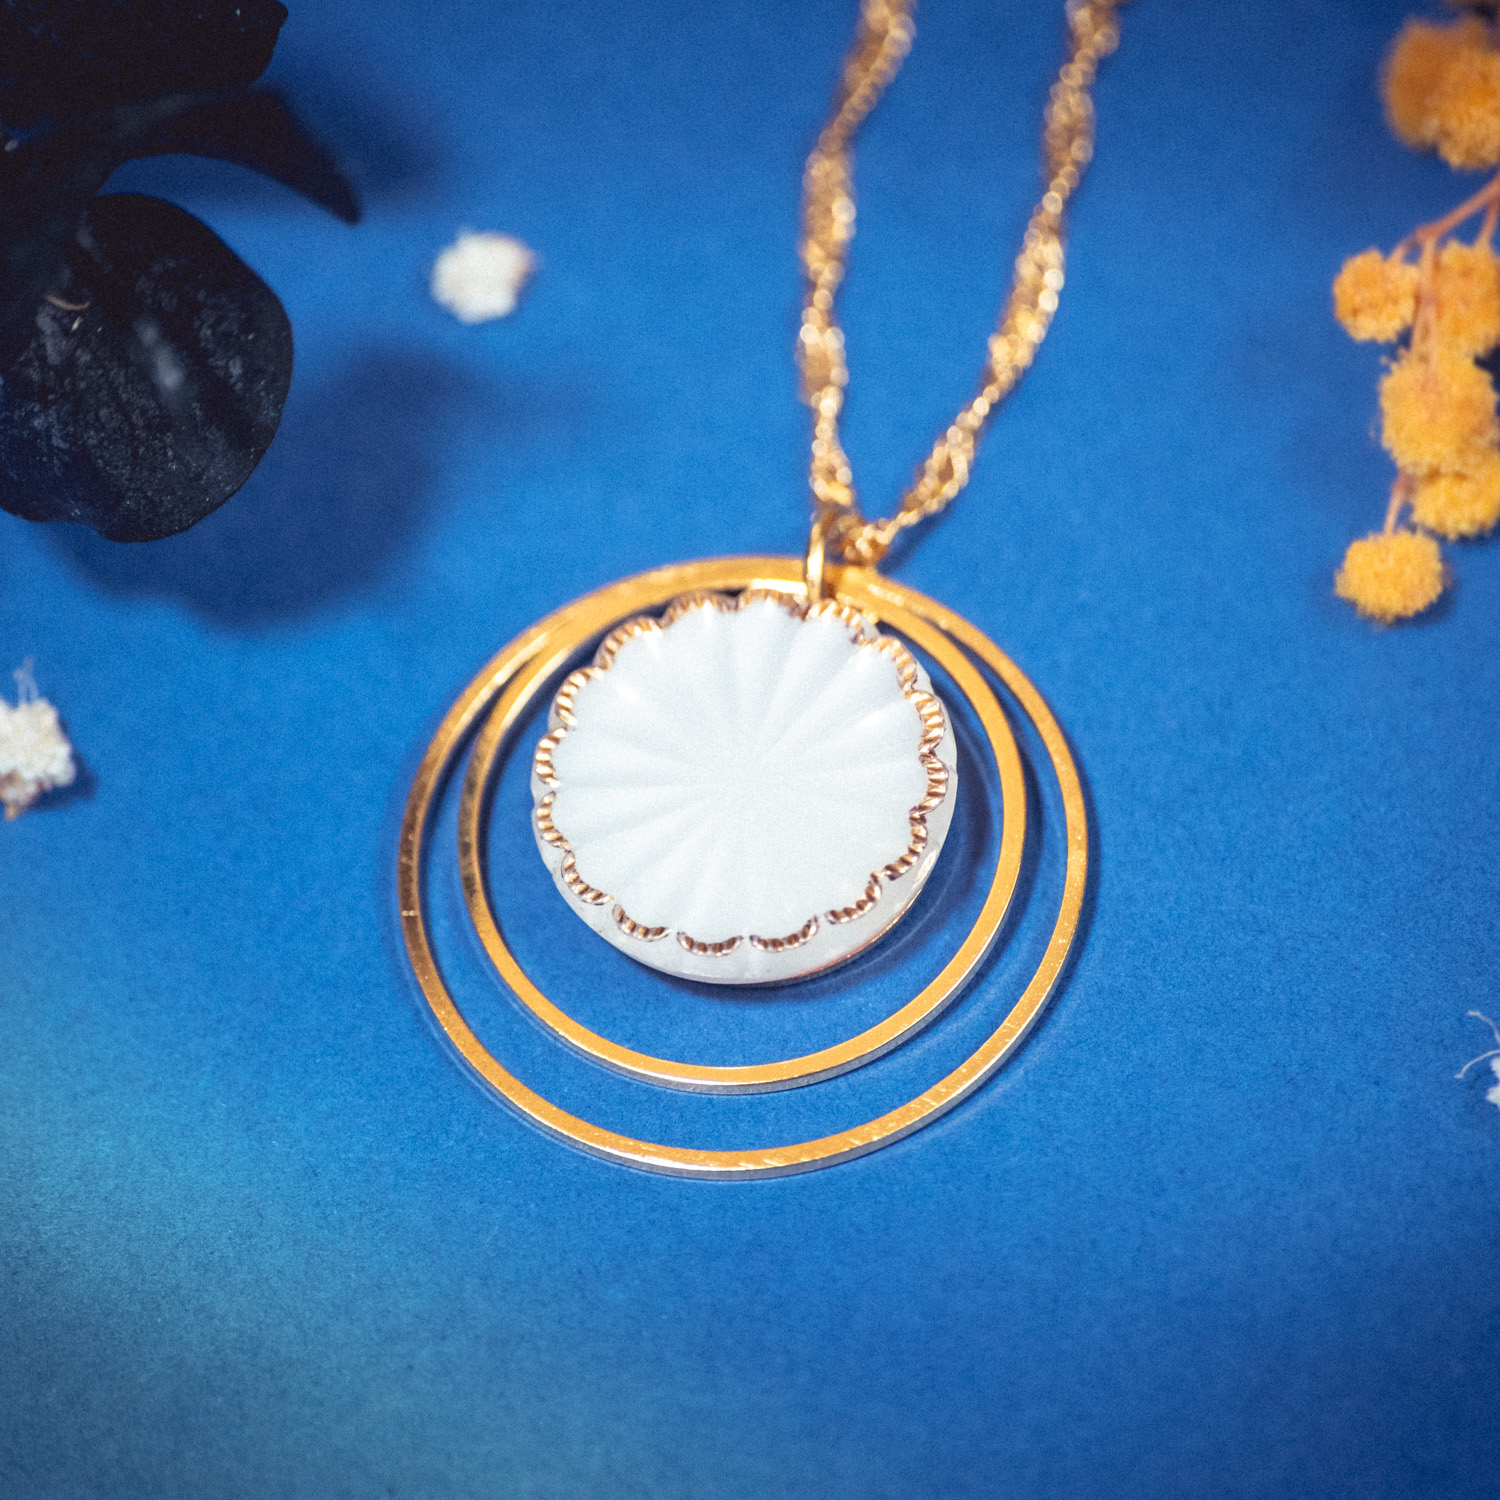 Assuna – Collier Lunare Joséphine – bouton ancien 1940 – collier d’inspiration vintage en forme de croissant de lune